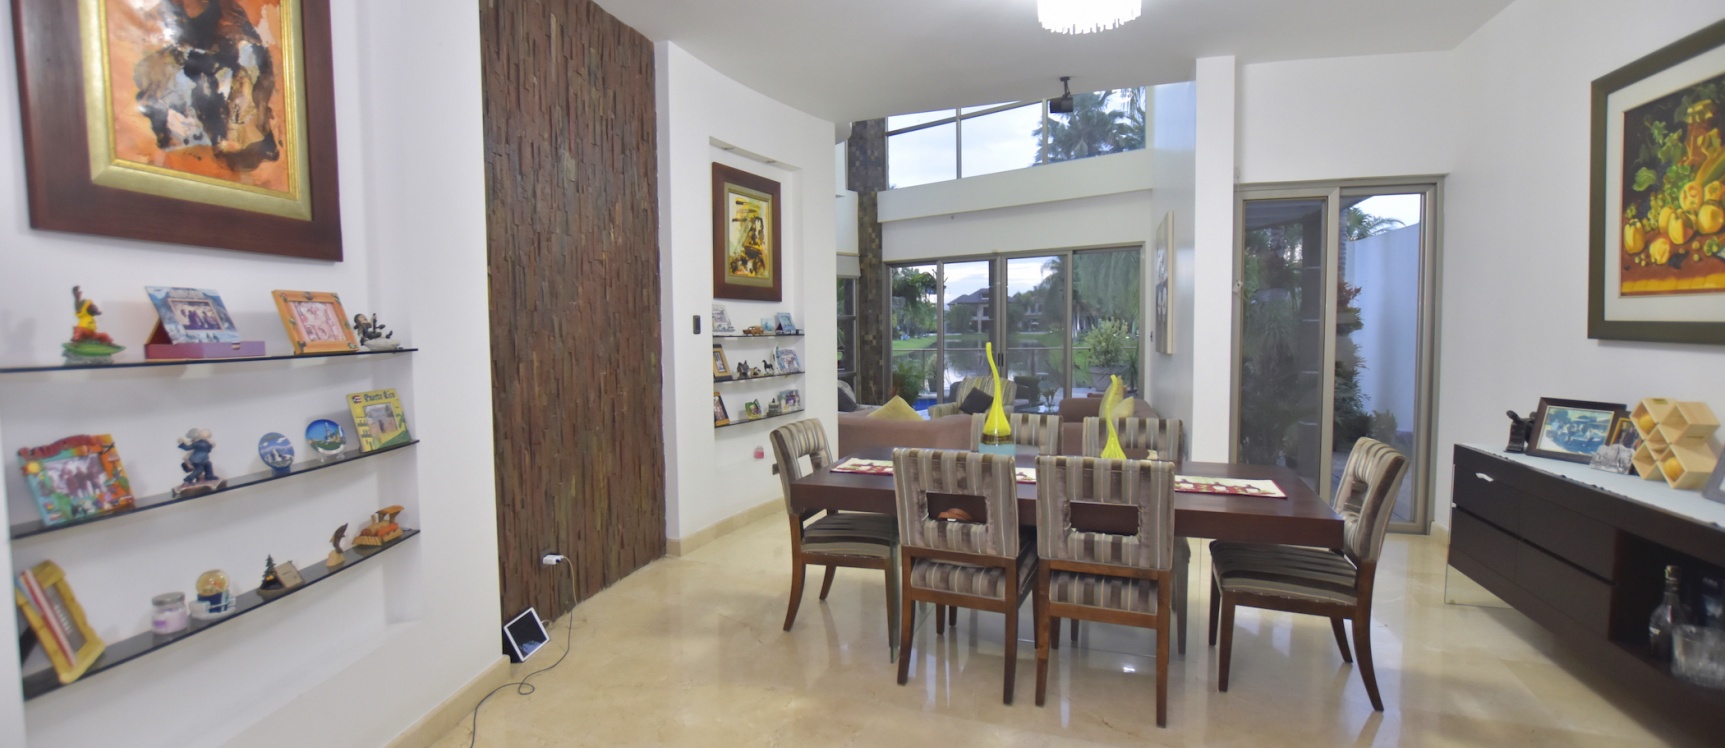 GeoBienes - Casa en venta en urbanización Laguna del Sol, Samborondón - Plusvalia Guayaquil Casas de venta y alquiler Inmobiliaria Ecuador